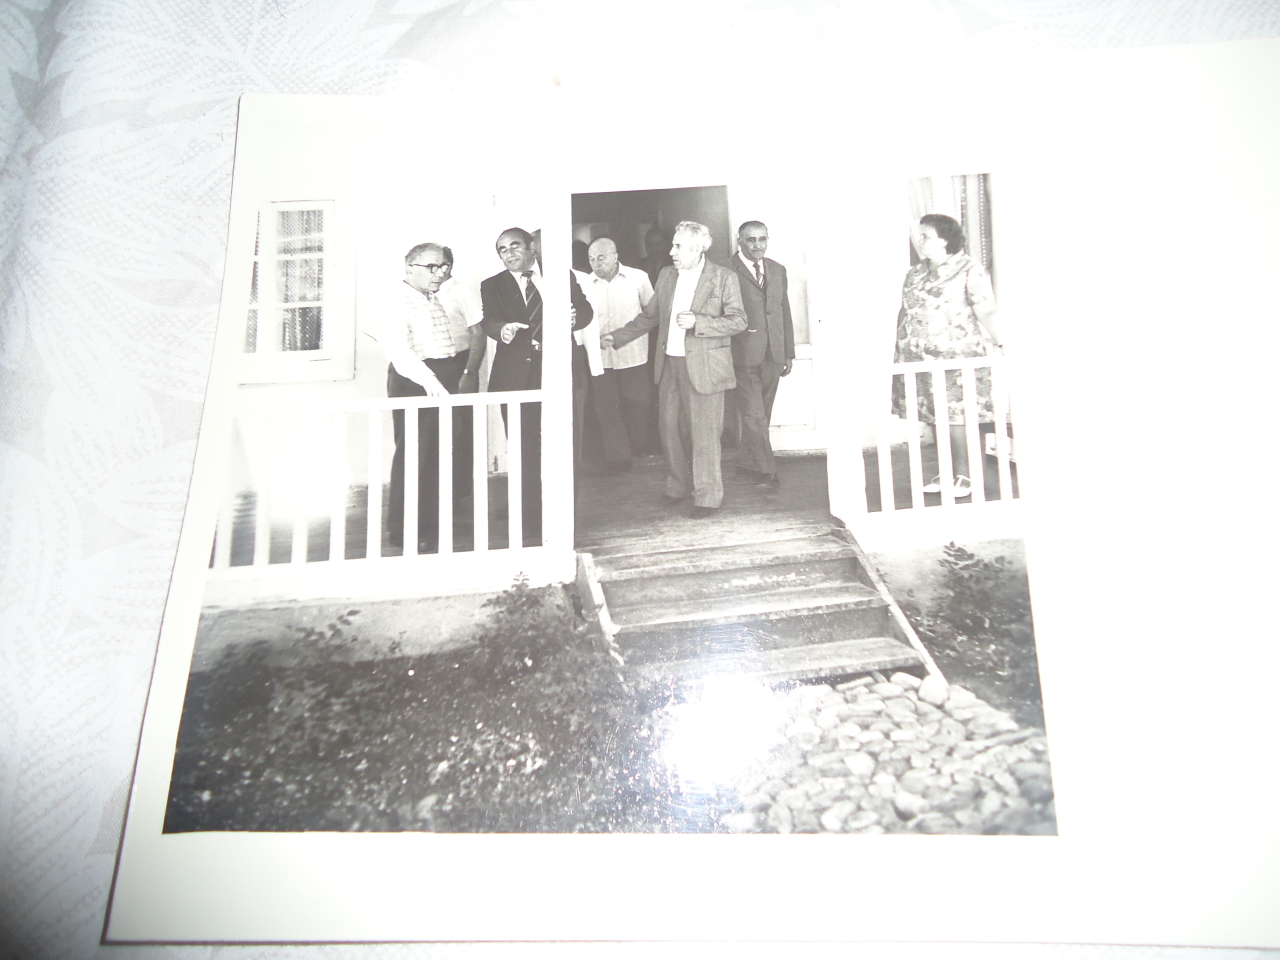 լուսանկար՝ ակադդեմիկոս Վ․Համբարձումյանը ՀՍՍՀ հեղ․պետ․թանգարանի դիրեկտոր Ա․Աբրահամյանը դոկտոր պրոֆեսոր Խ․Բարսեղյանը և կուս․շրջկոմի առաջին քարտուղար Վ․Բալայանը 